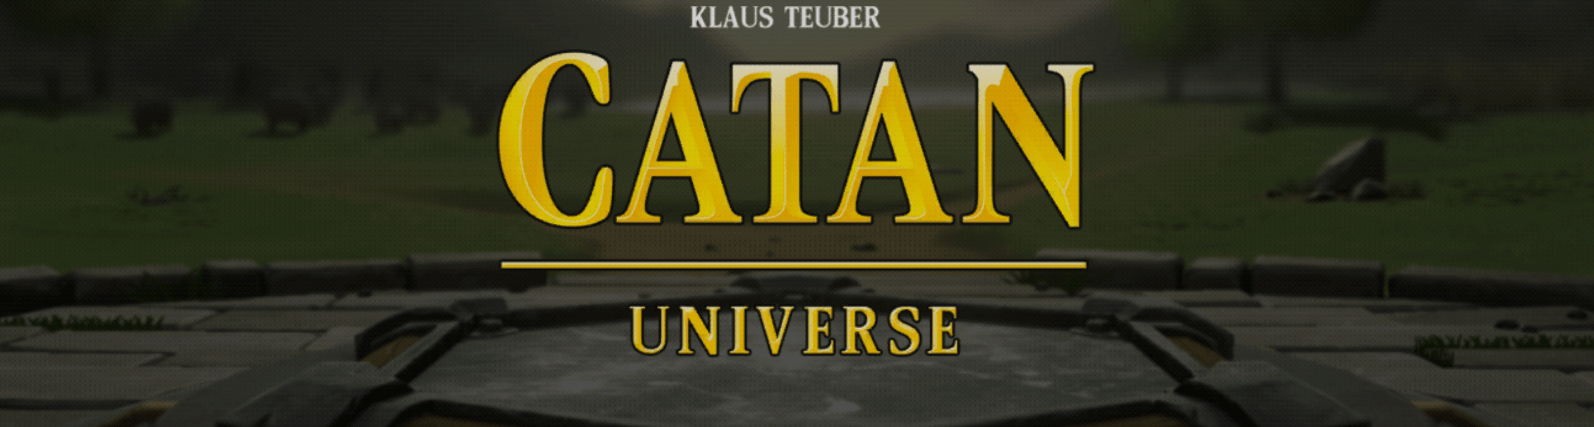 Catan Logo - Catan Universe App Review - Pixelated Cardboard